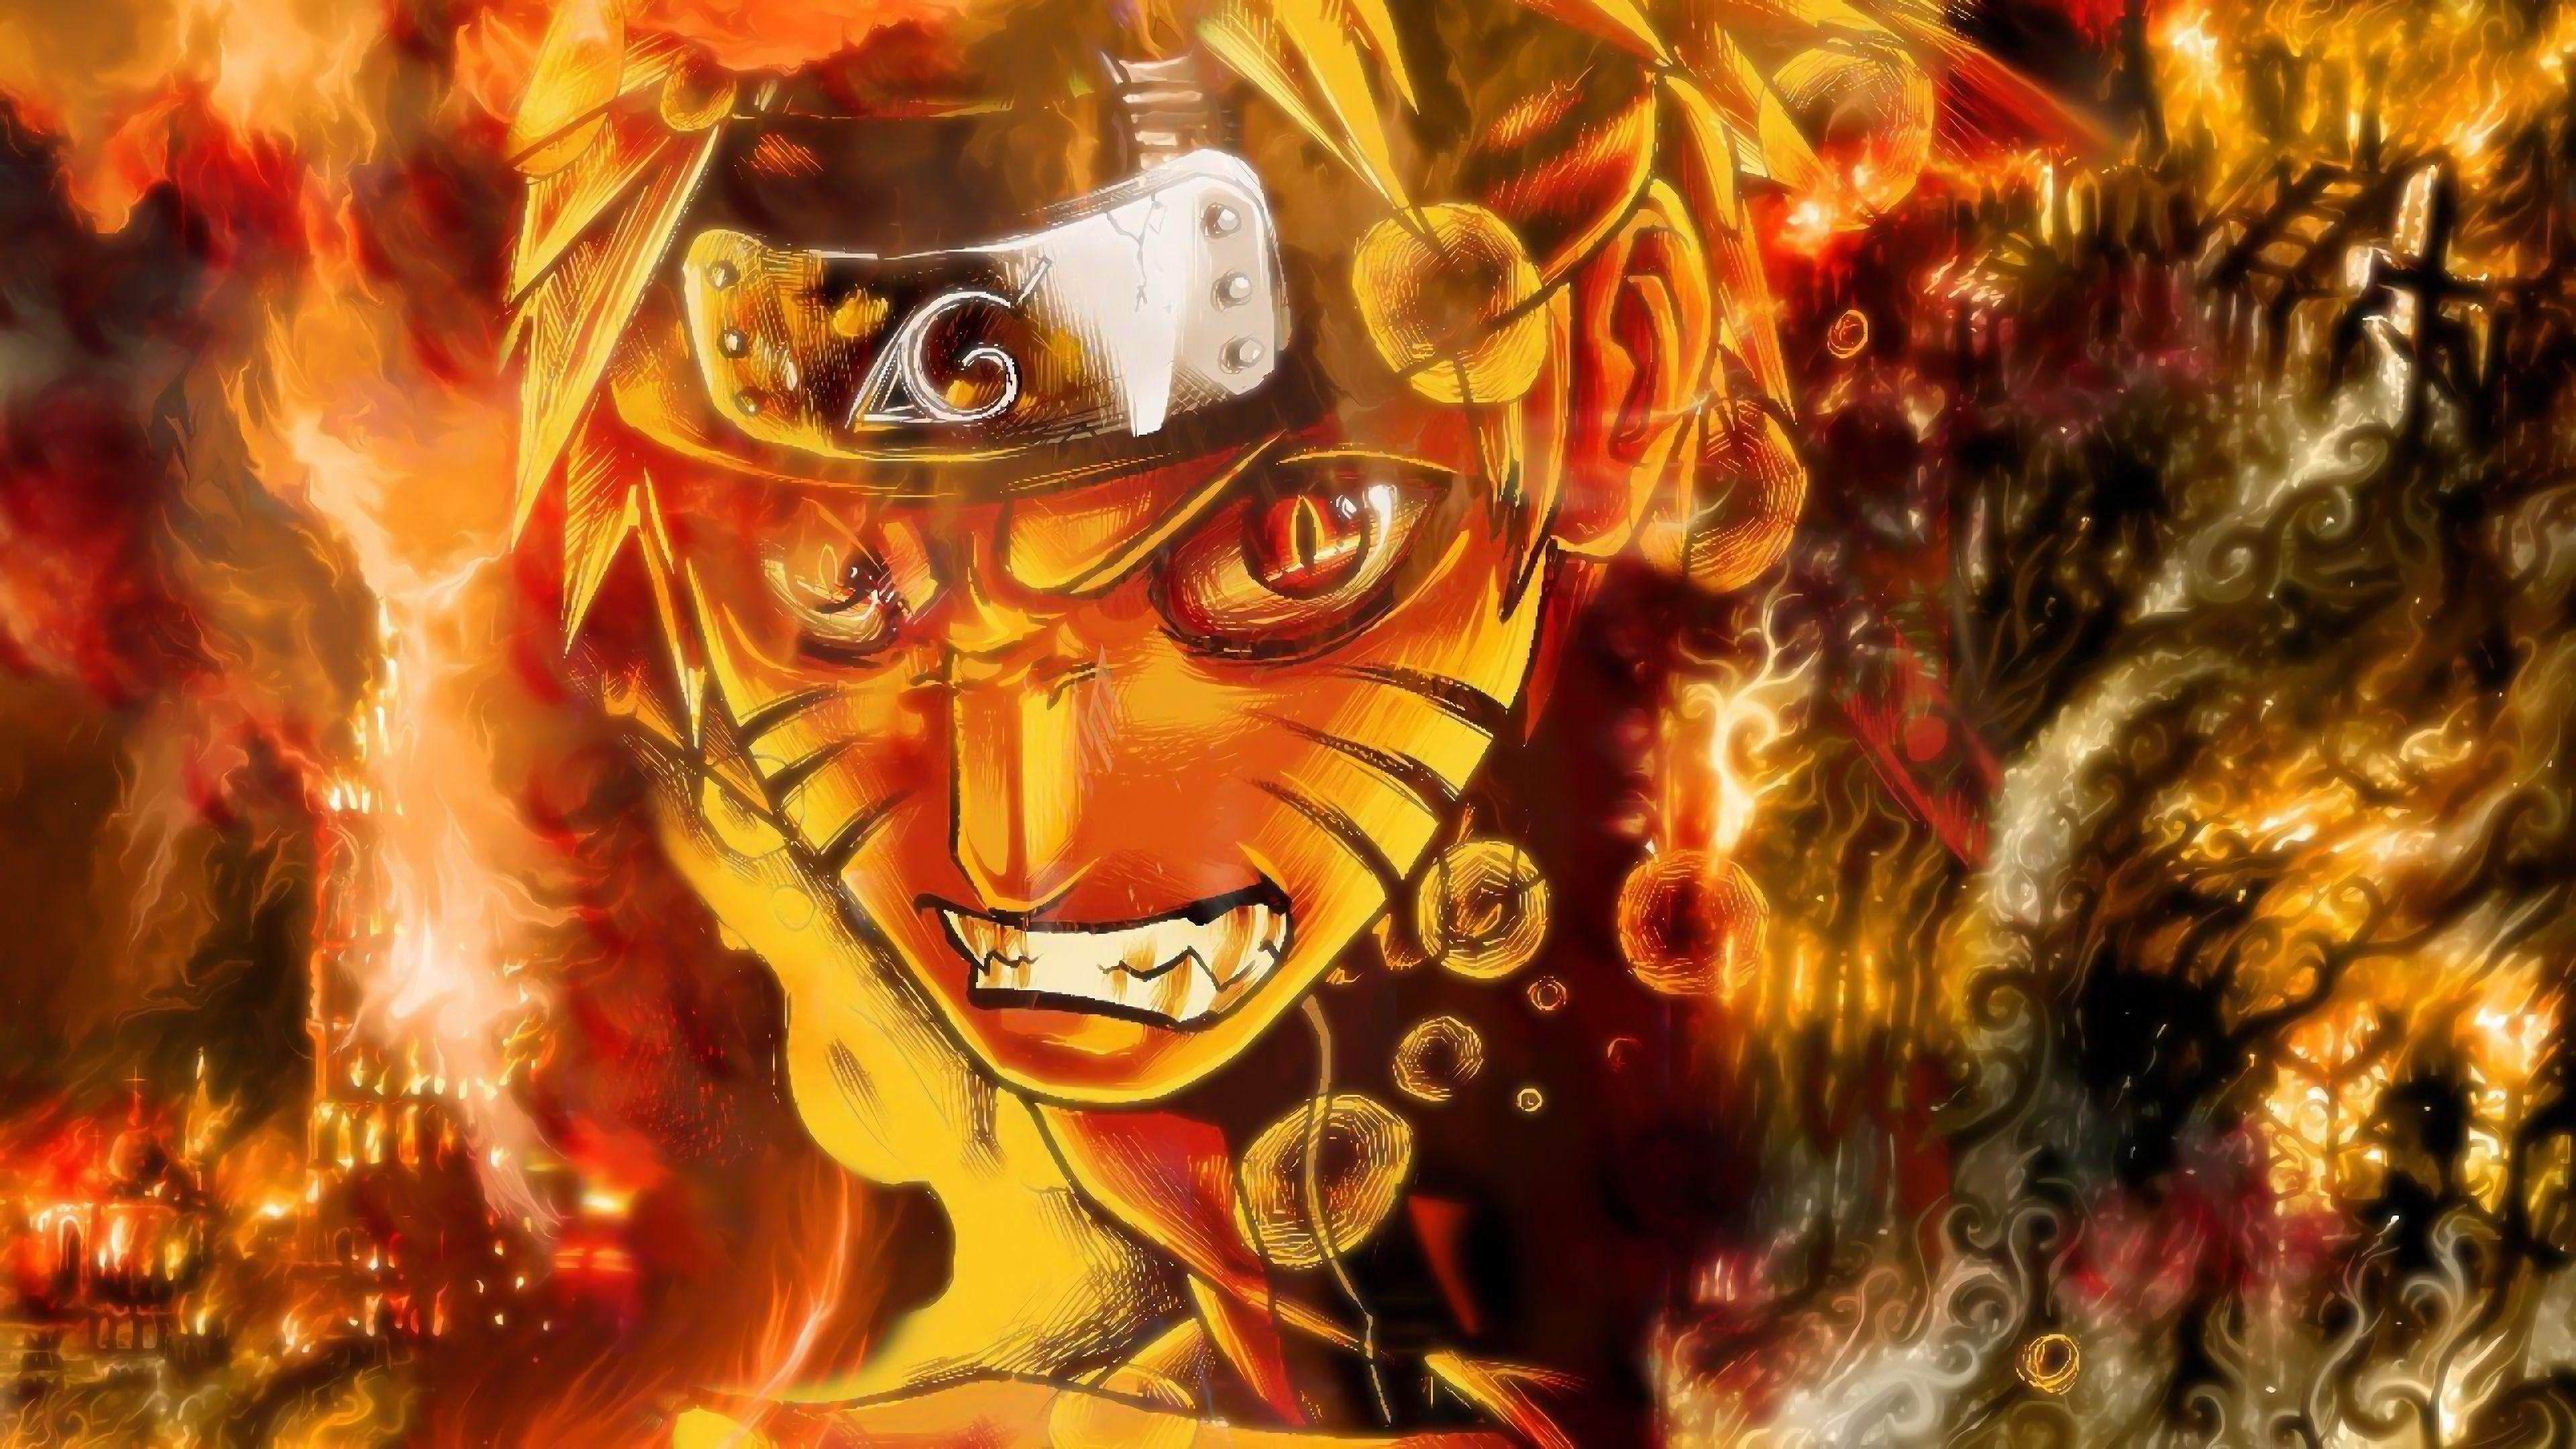 Nếu bạn là fan của Naruto, bạn không thể bỏ lỡ bộ sưu tập hình nền Naruto. Với đủ các nhân vật và tình huống khác nhau, những hình nền này sẽ giúp bạn tạo cảm giác cuộc sống trong thế giới của Naruto mỗi khi bạn mở máy tính.